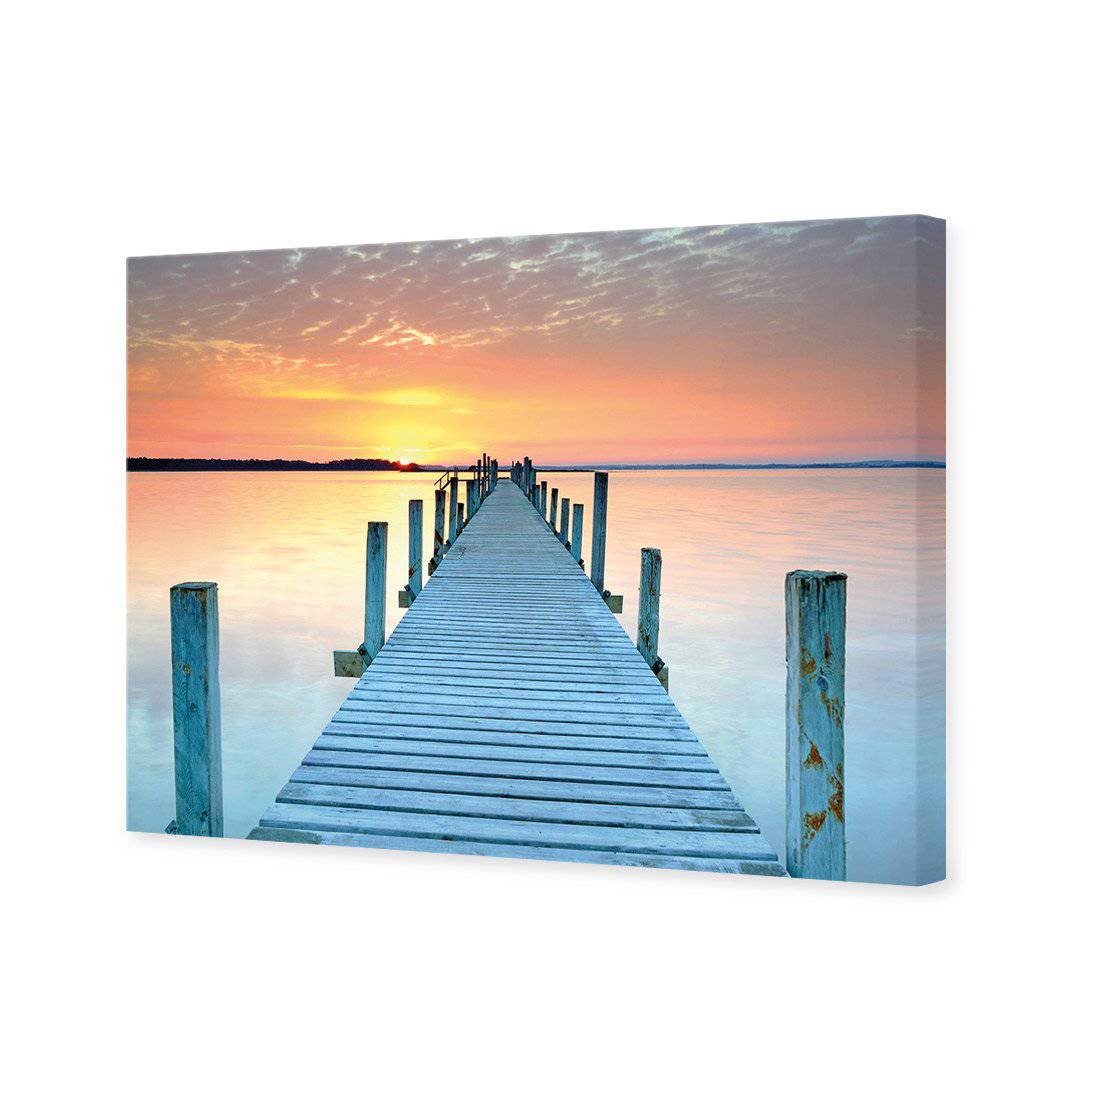 Sunset Pier Canvas Art-Canvas-Wall Art Designs-45x30cm-Canvas - No Frame-Wall Art Designs